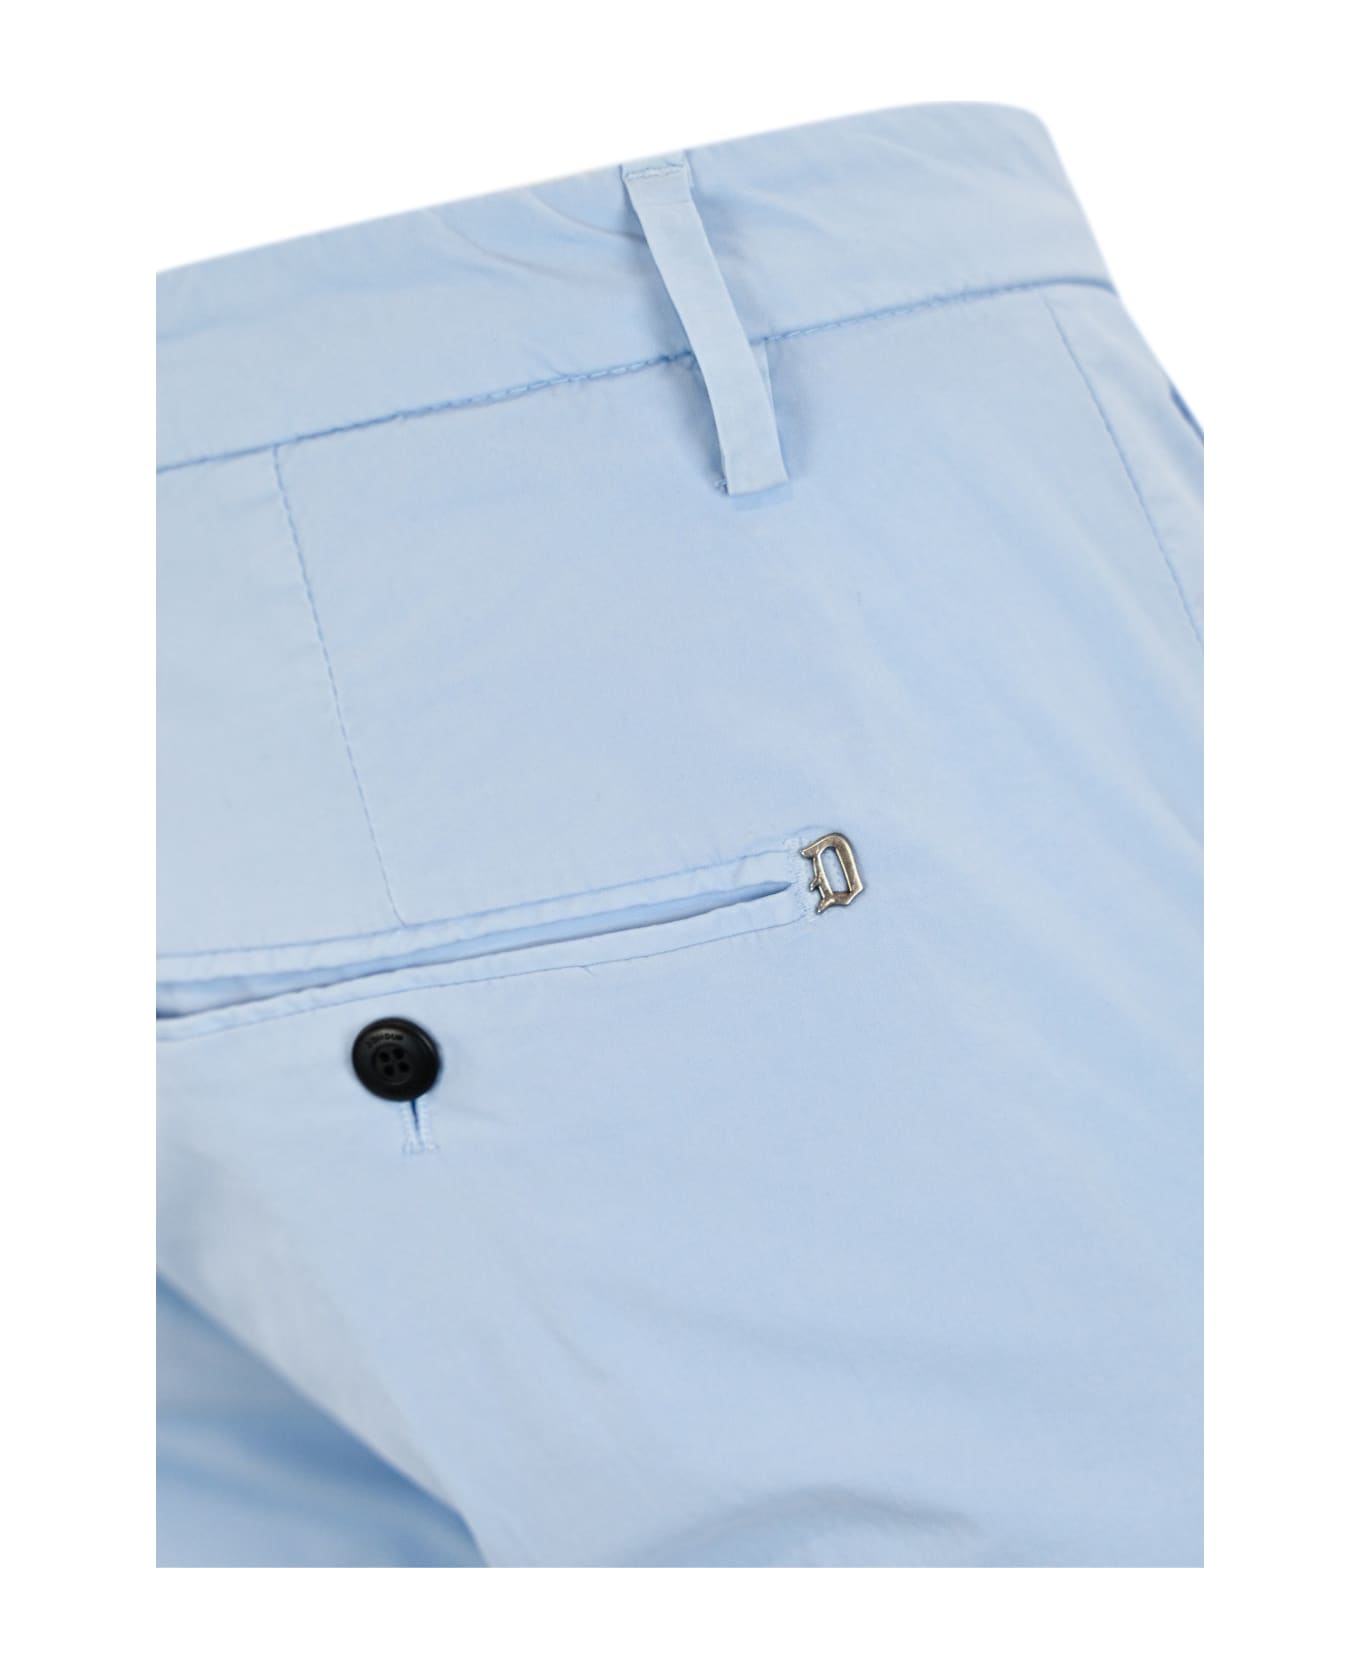 Dondup Gaubert Trousers In Light Blue Poplin - Azzurro